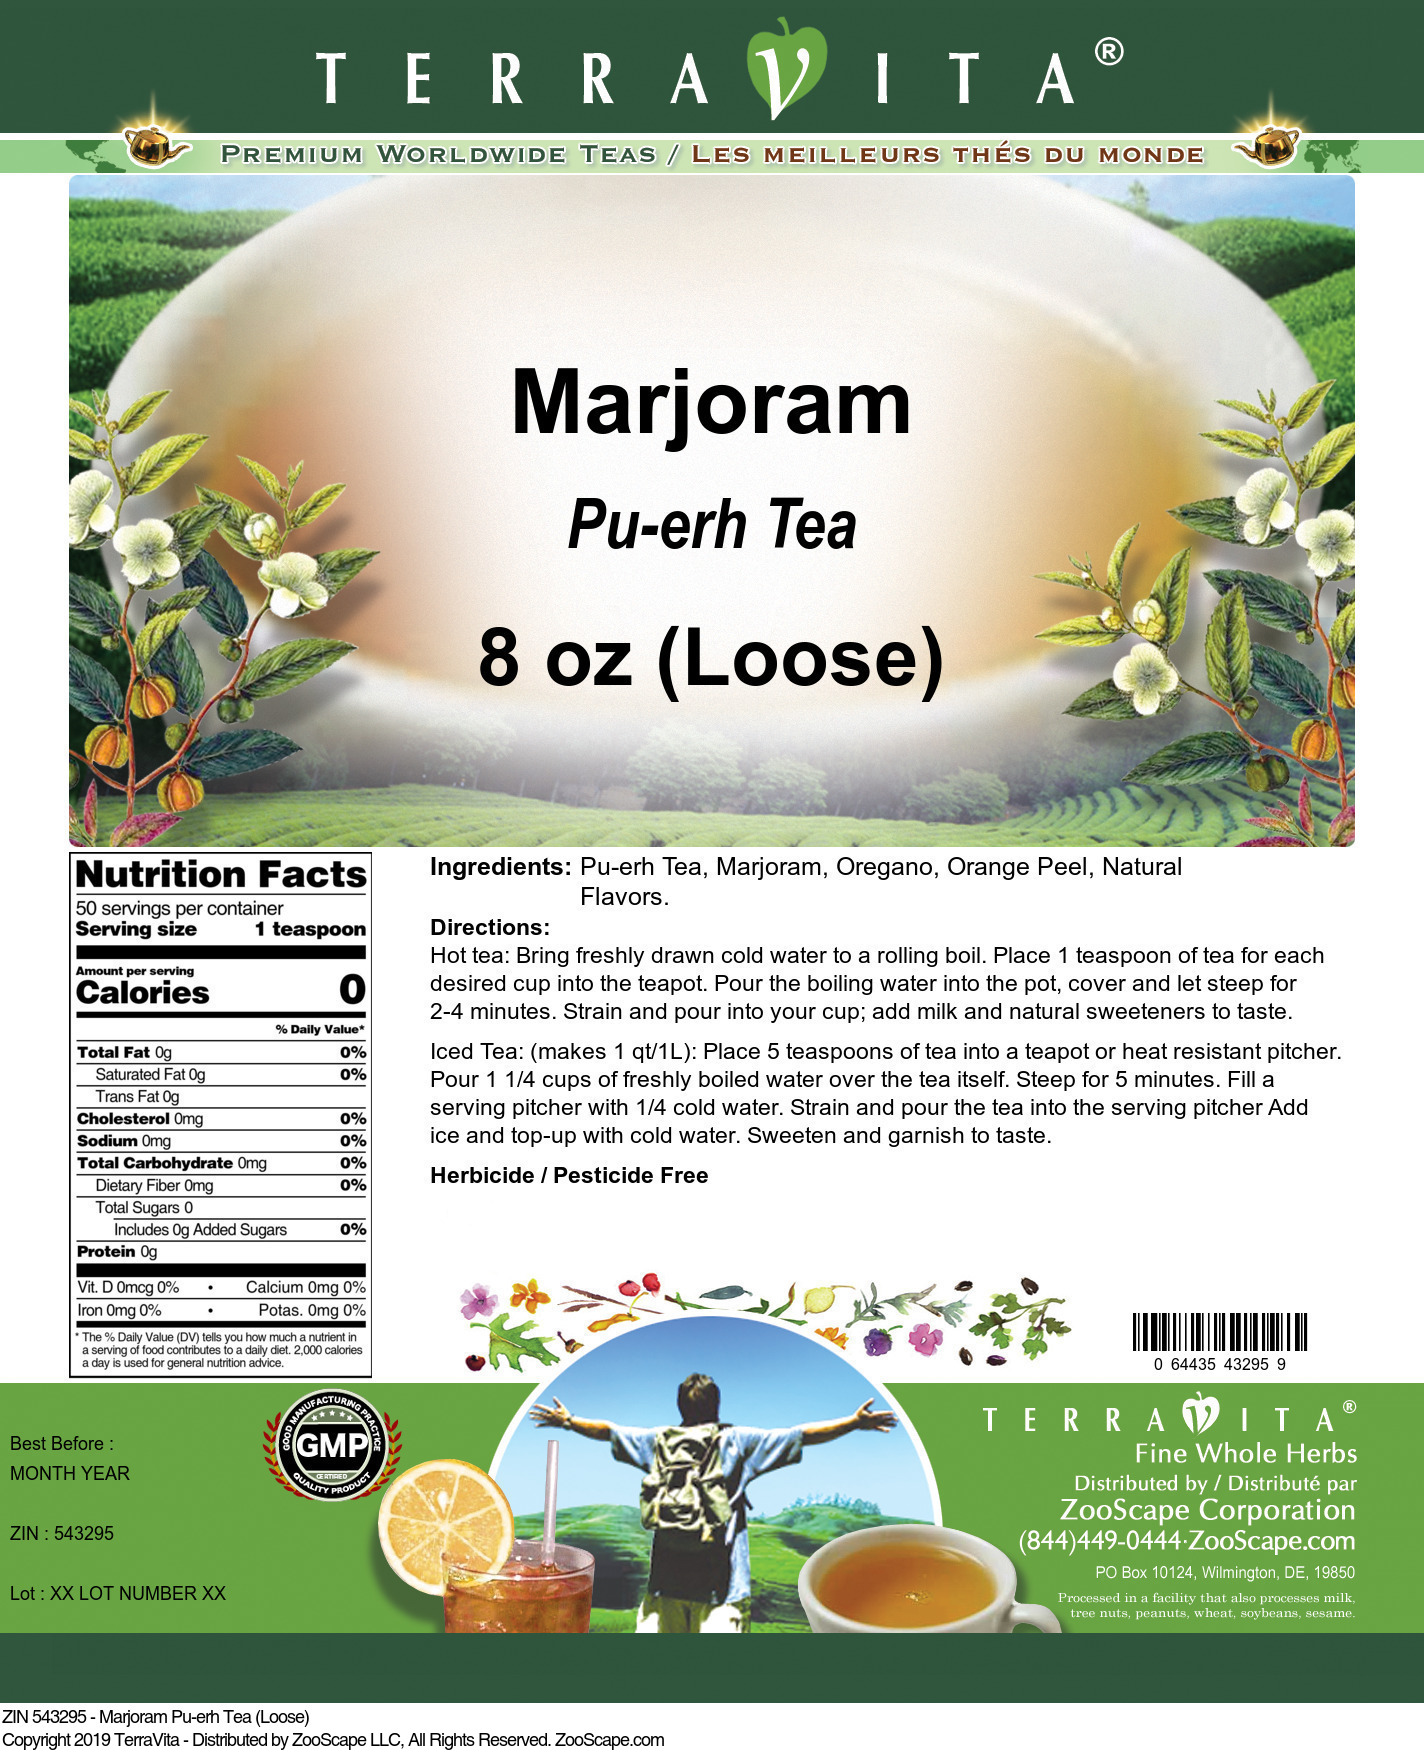 Marjoram Pu-erh Tea (Loose) - Label